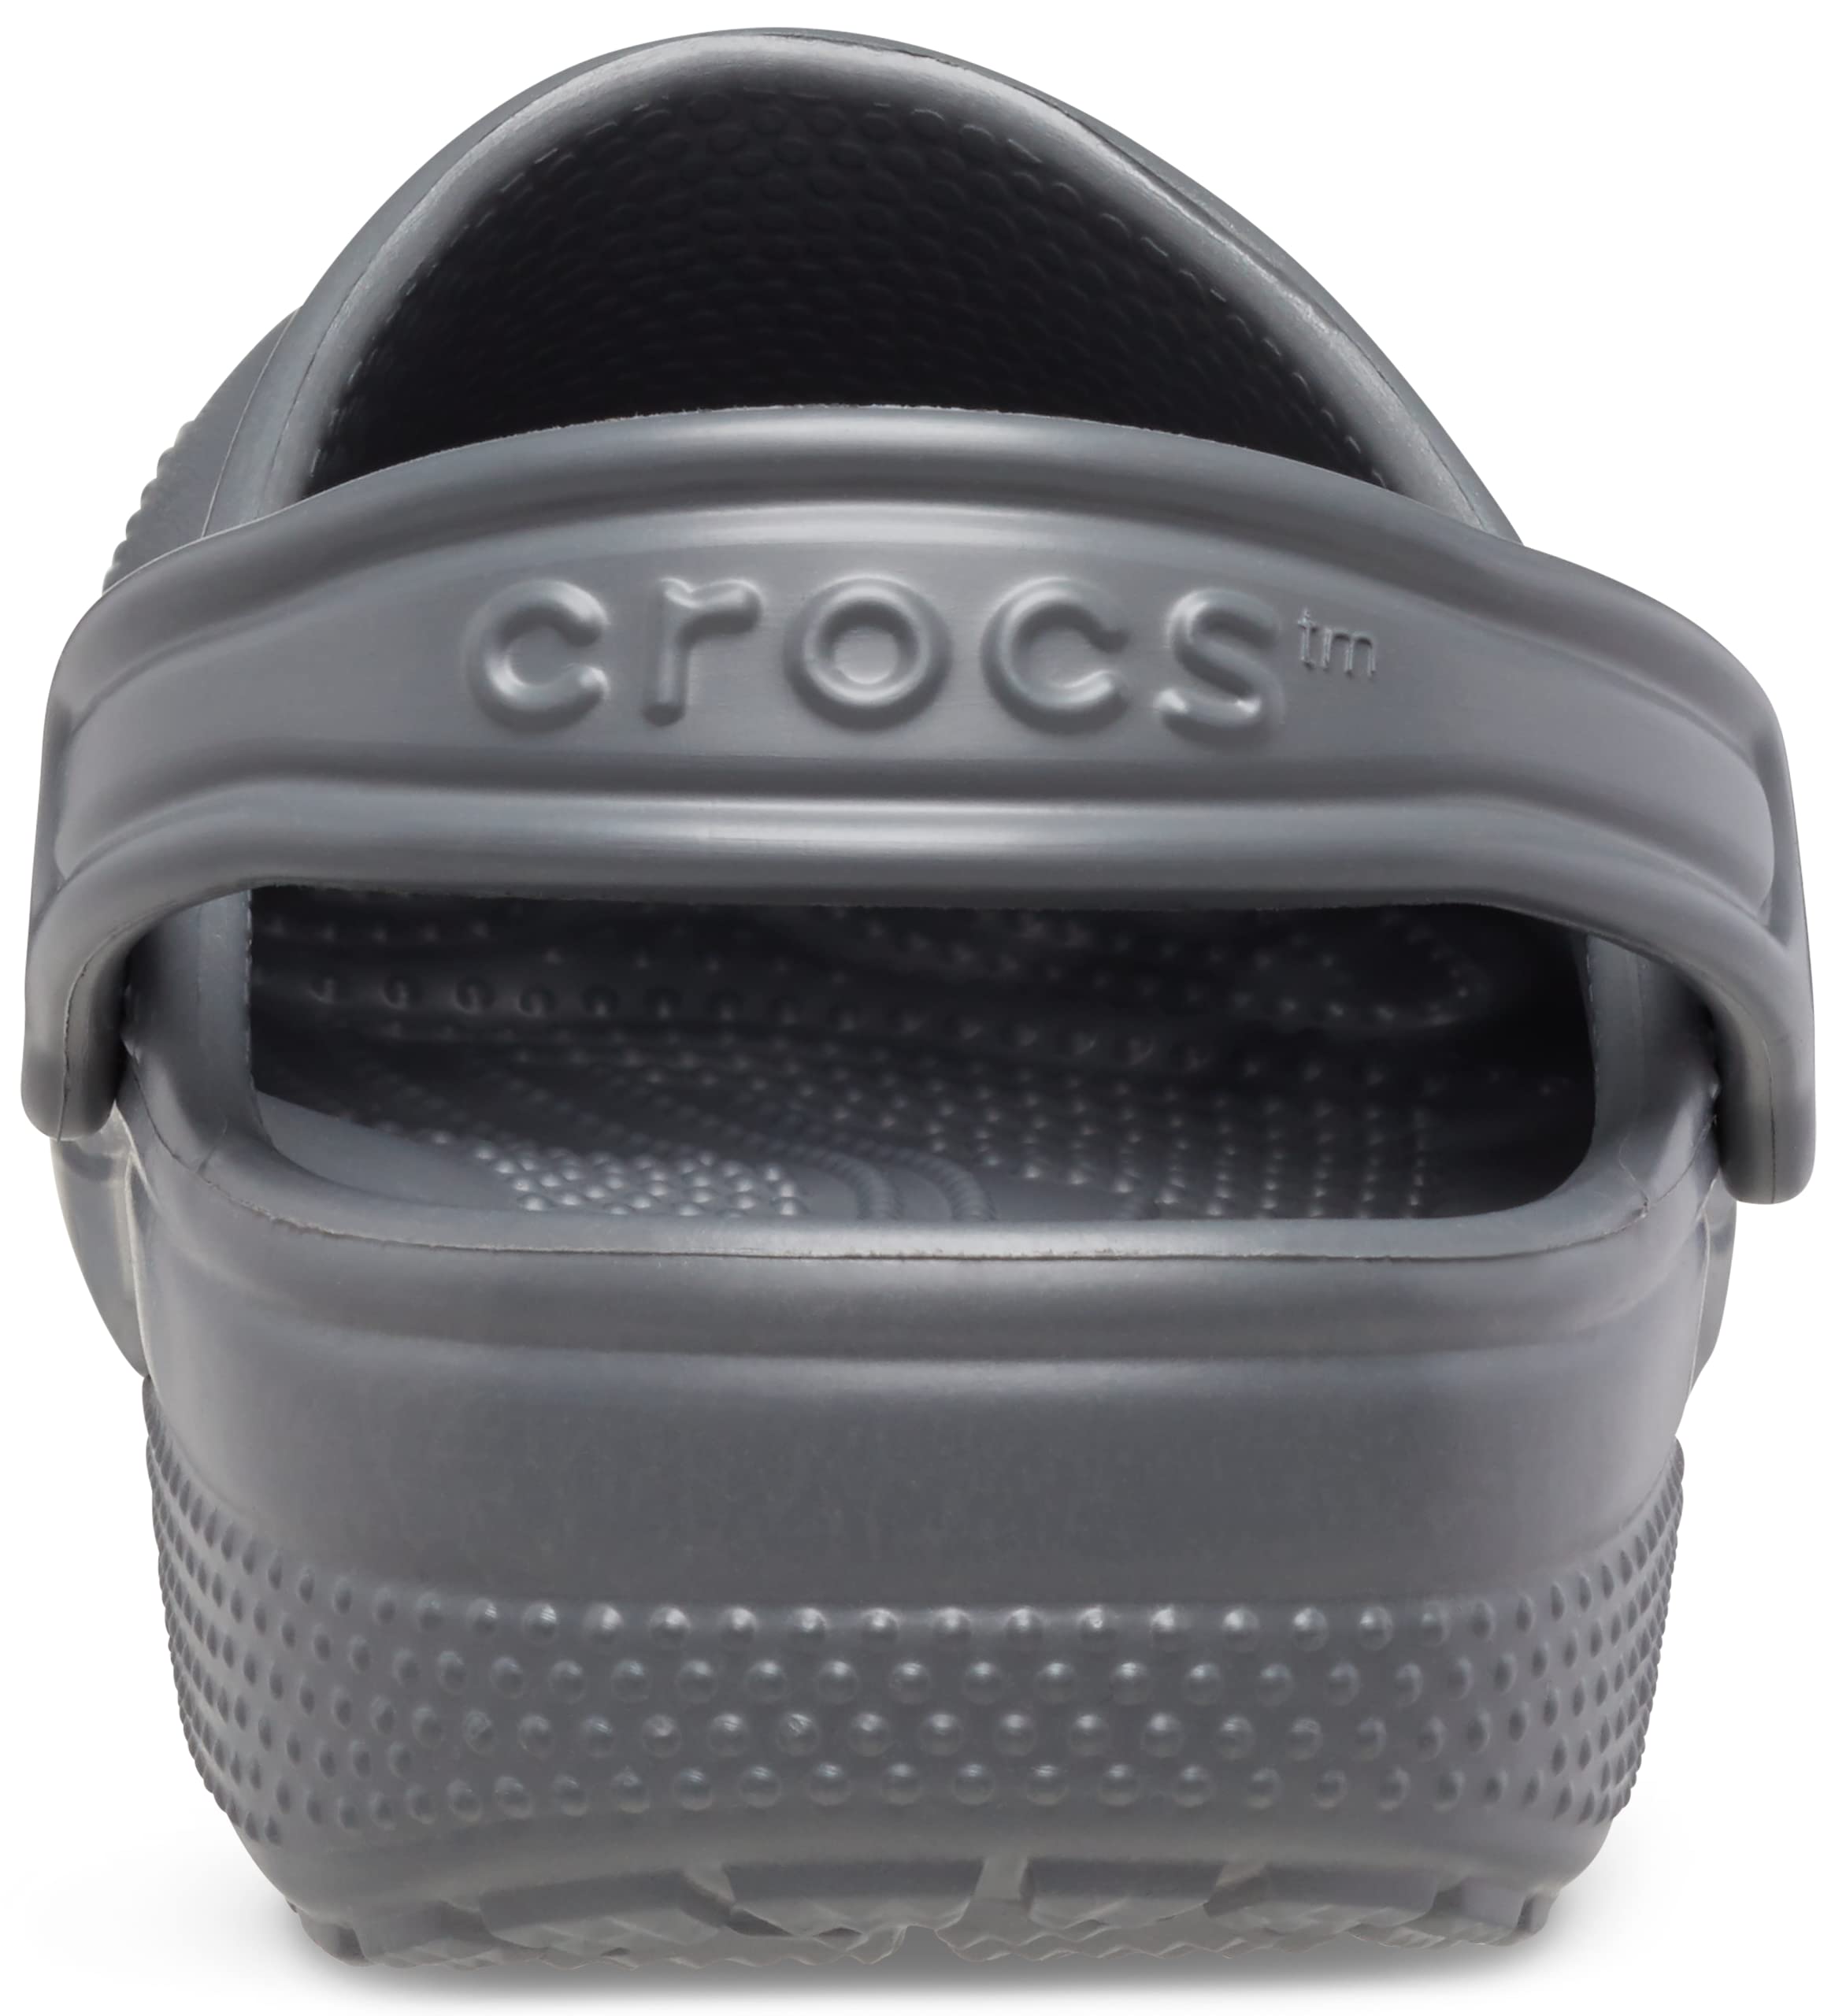 Crocs Unisex-Child Classic Clog